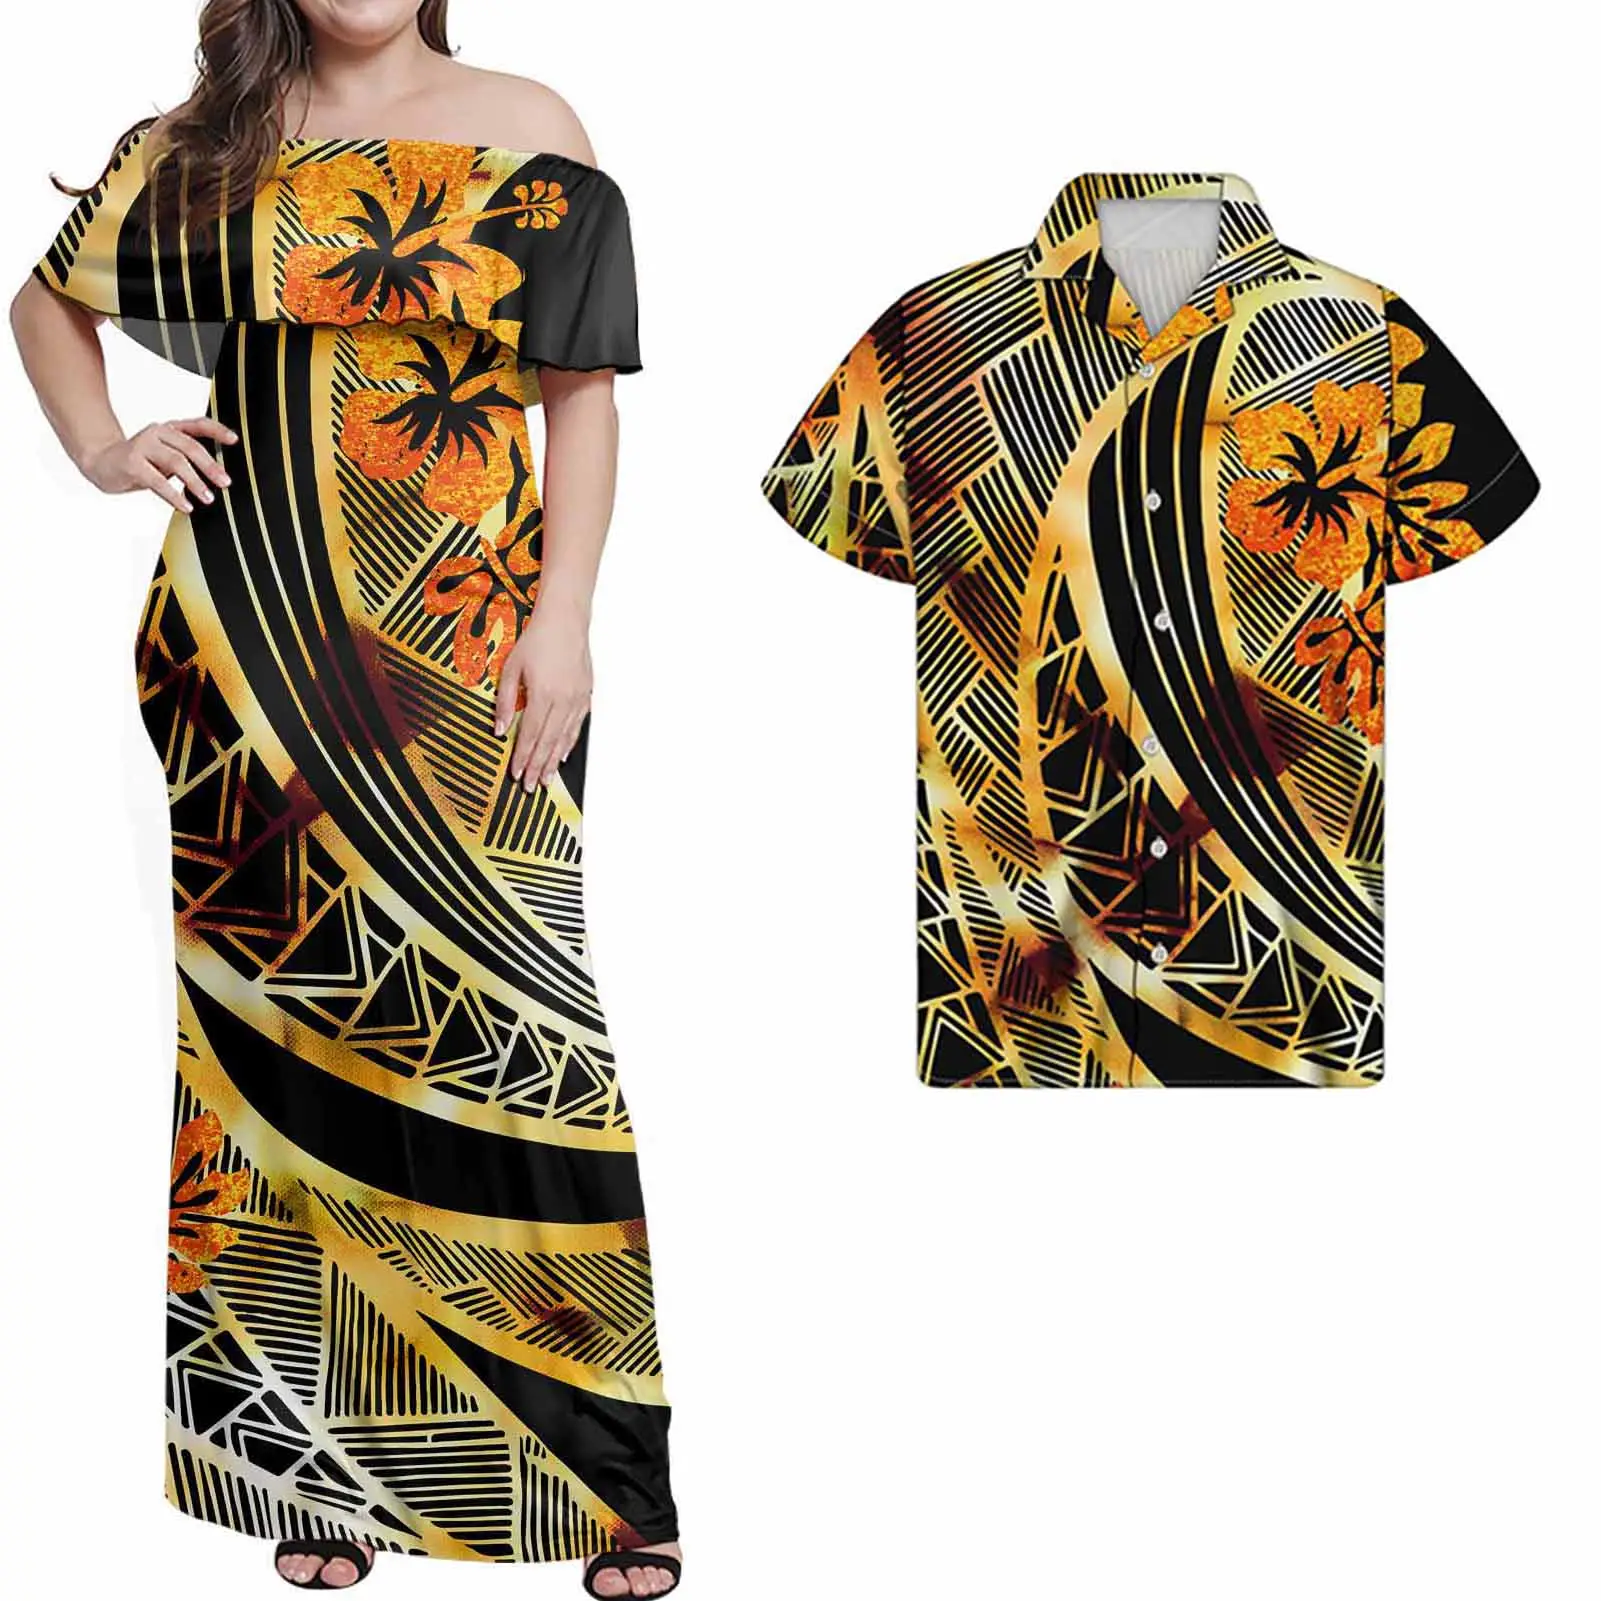 Kadınlar için yeni tasarımcı elbise yaz artı boyutu elbiseler zarif kapalı tek omuzlu elbise klasik polinezya moda adaları giyim